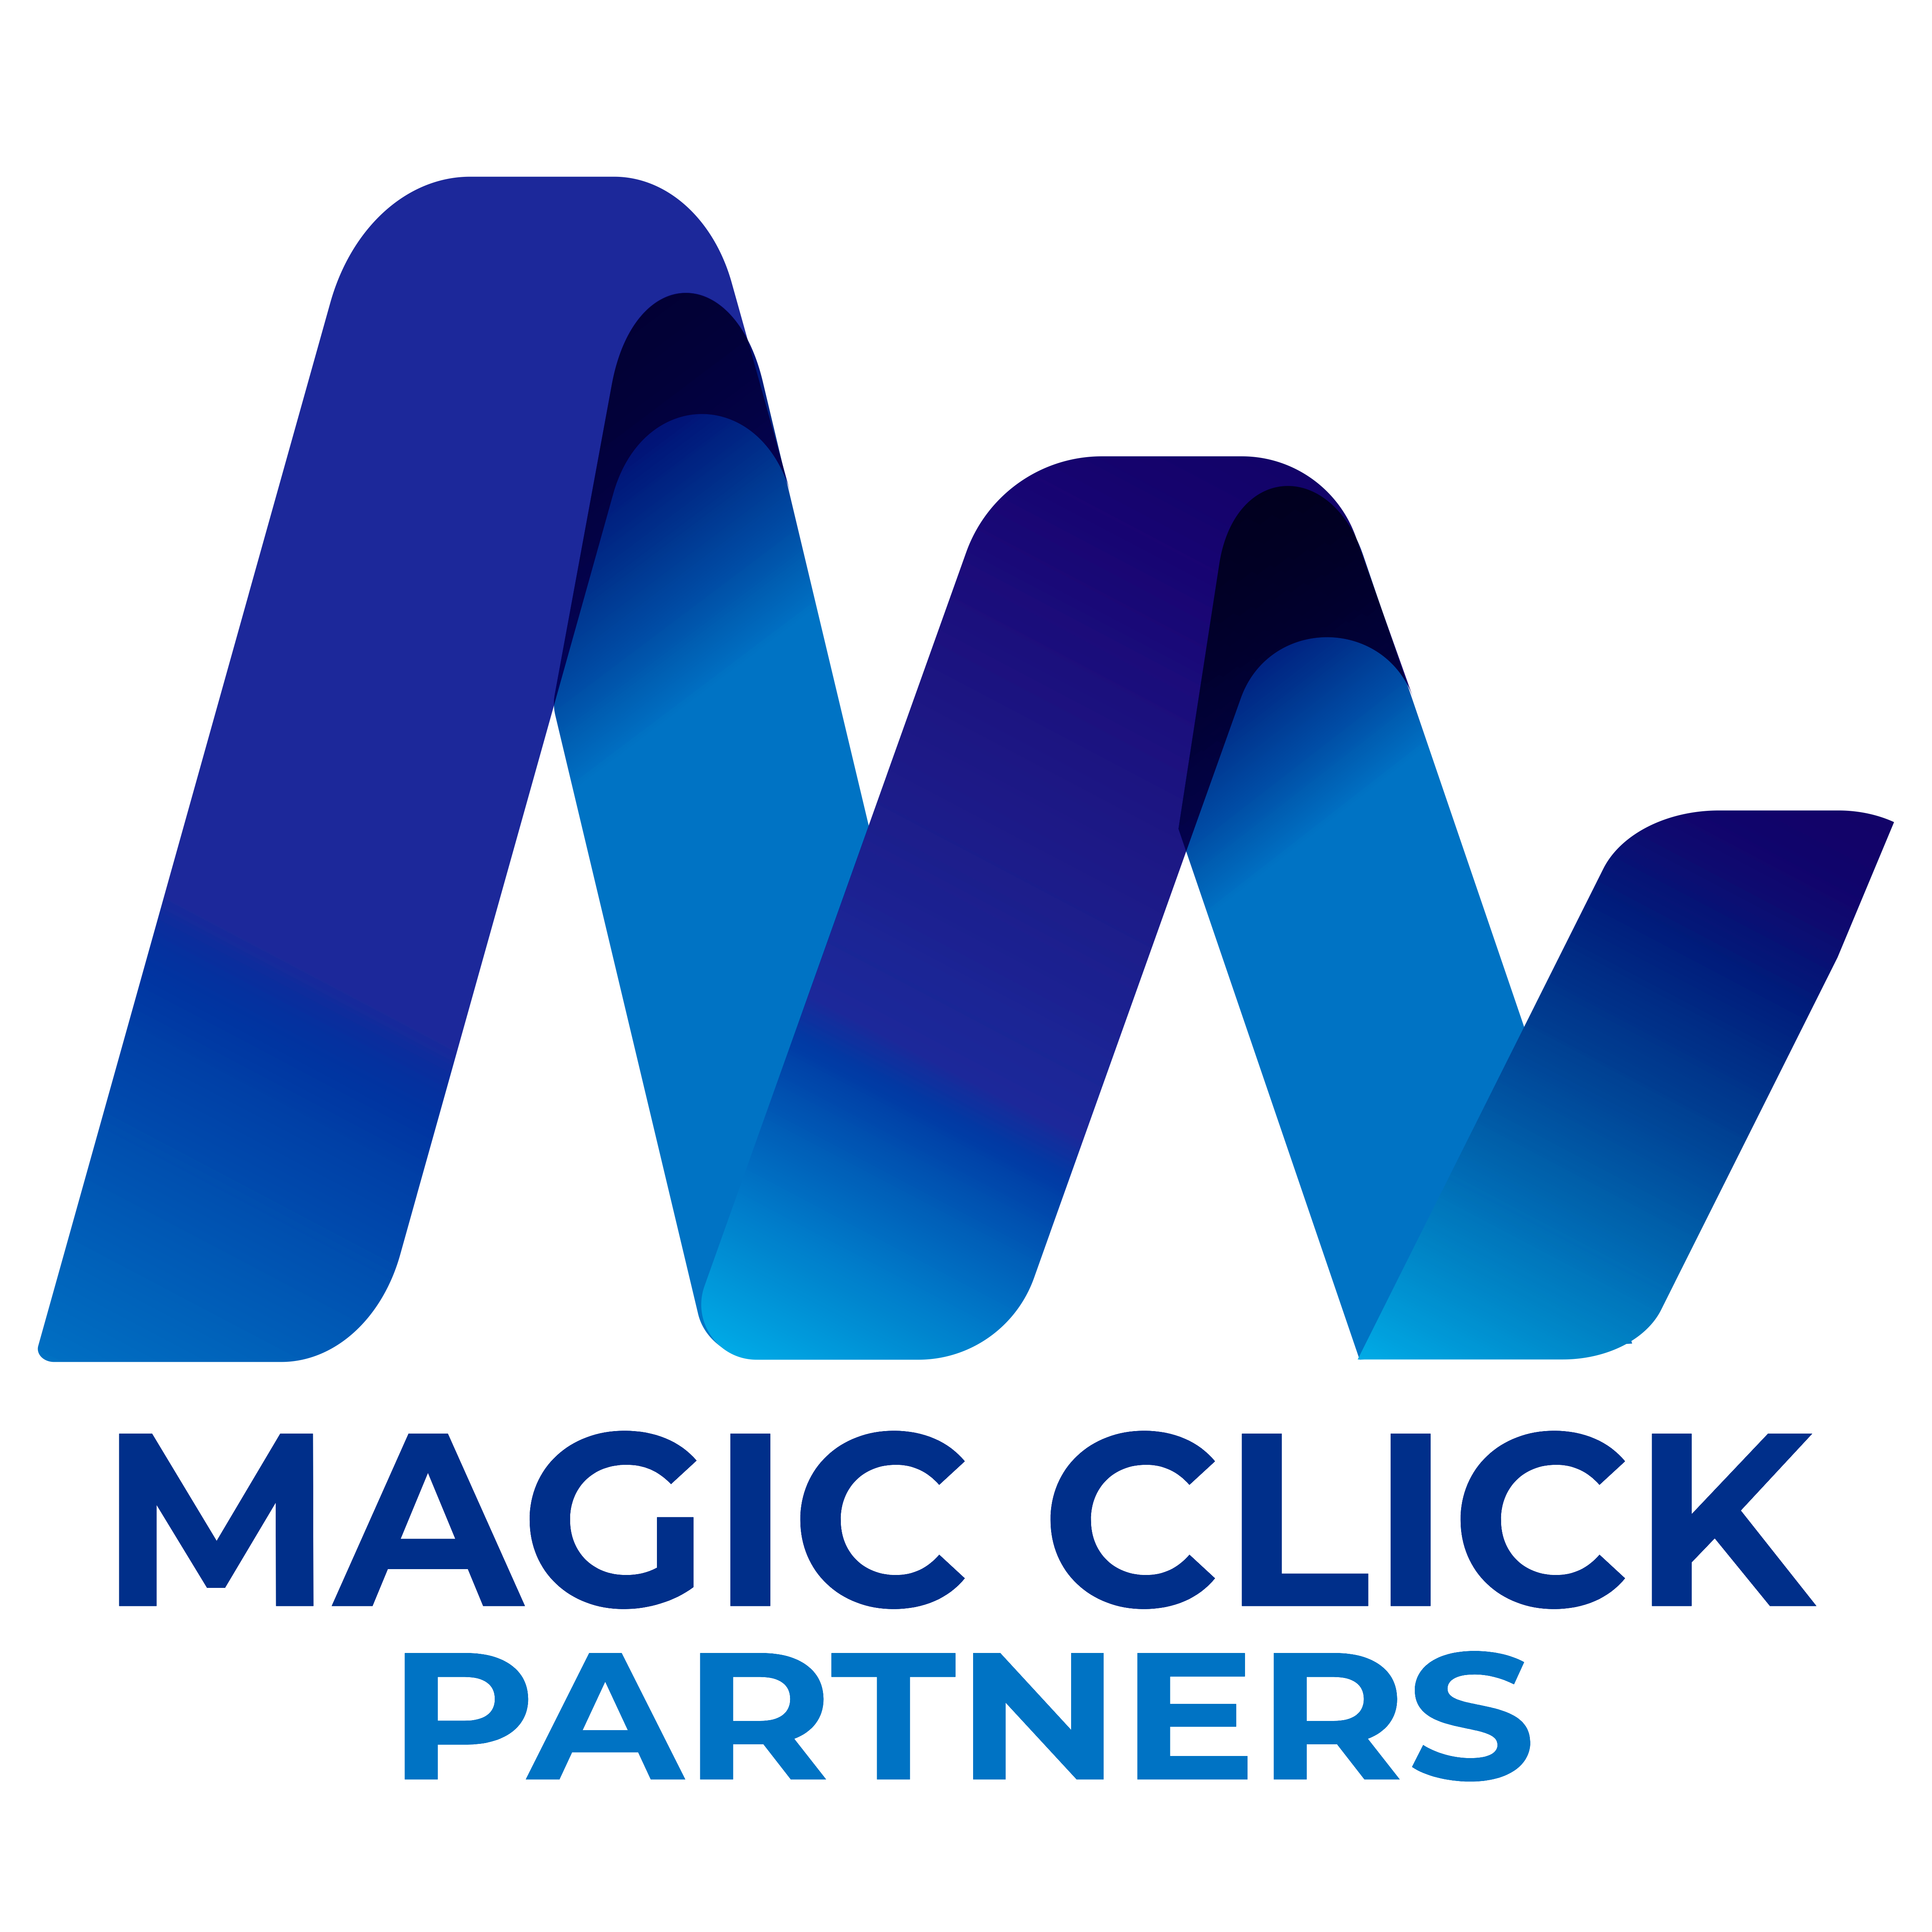 Magic Click Partners - Company logo